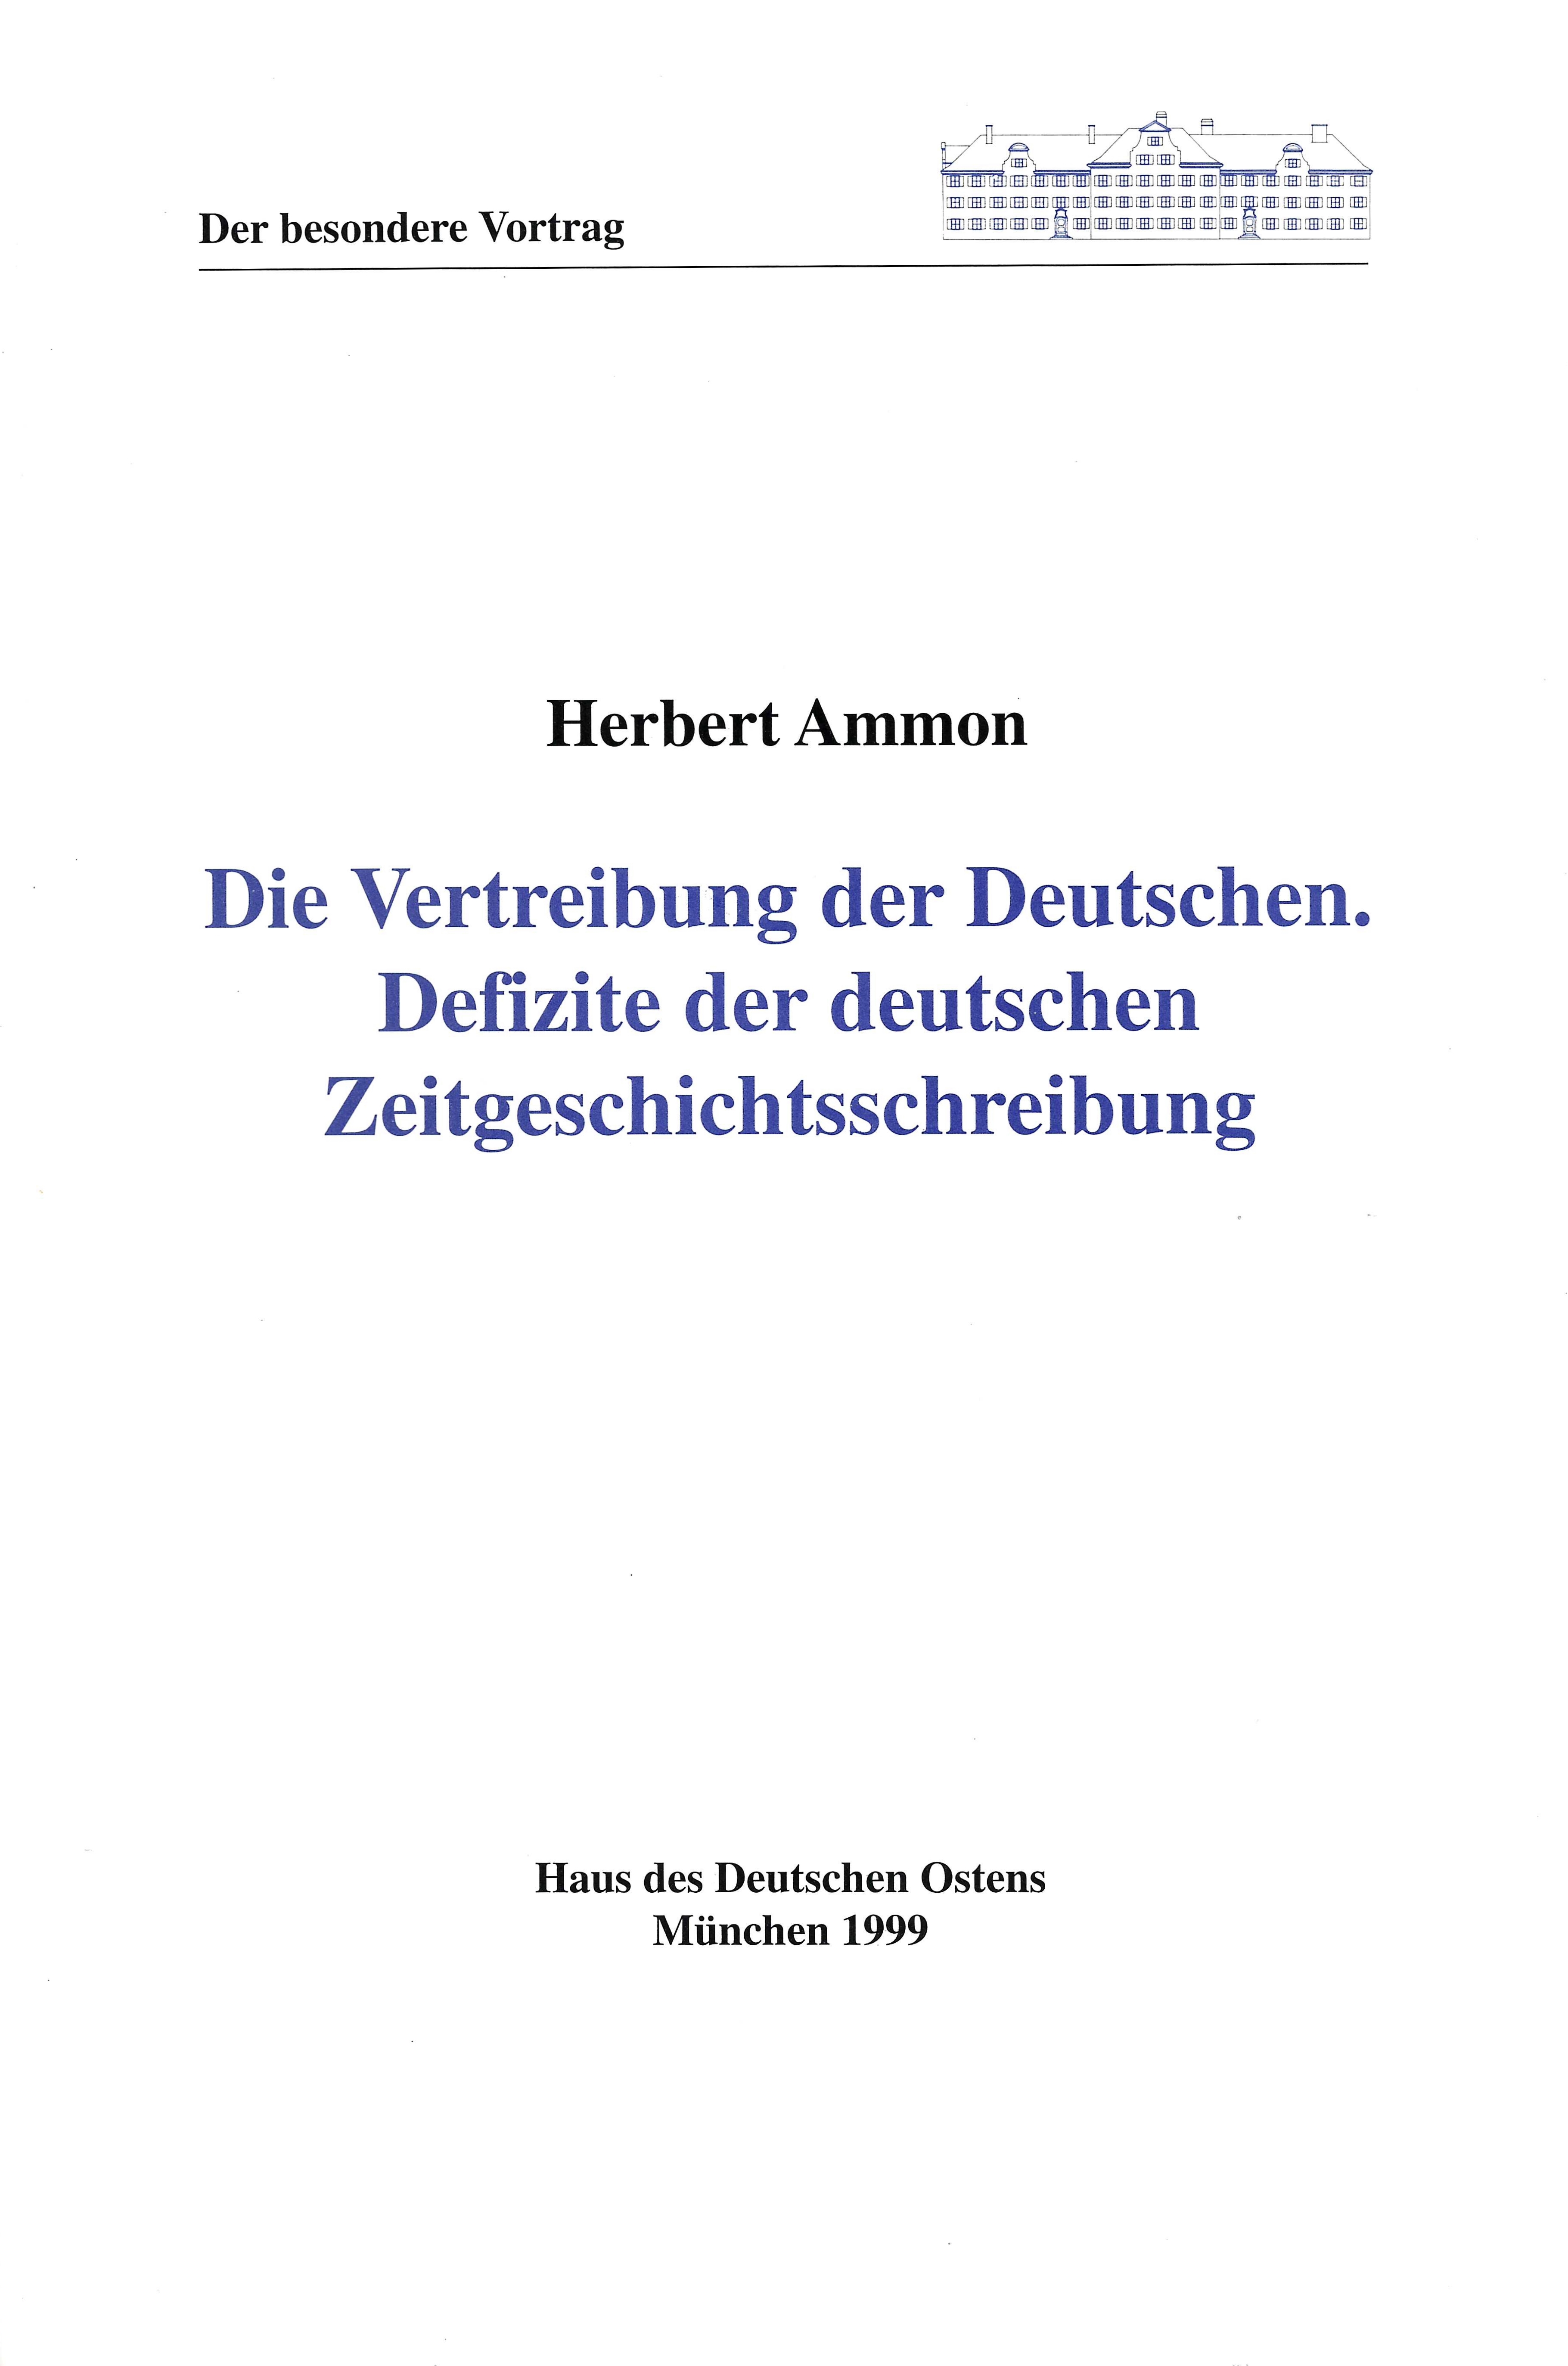 Herbert Ammon: Die Vertreibung der Deutschen